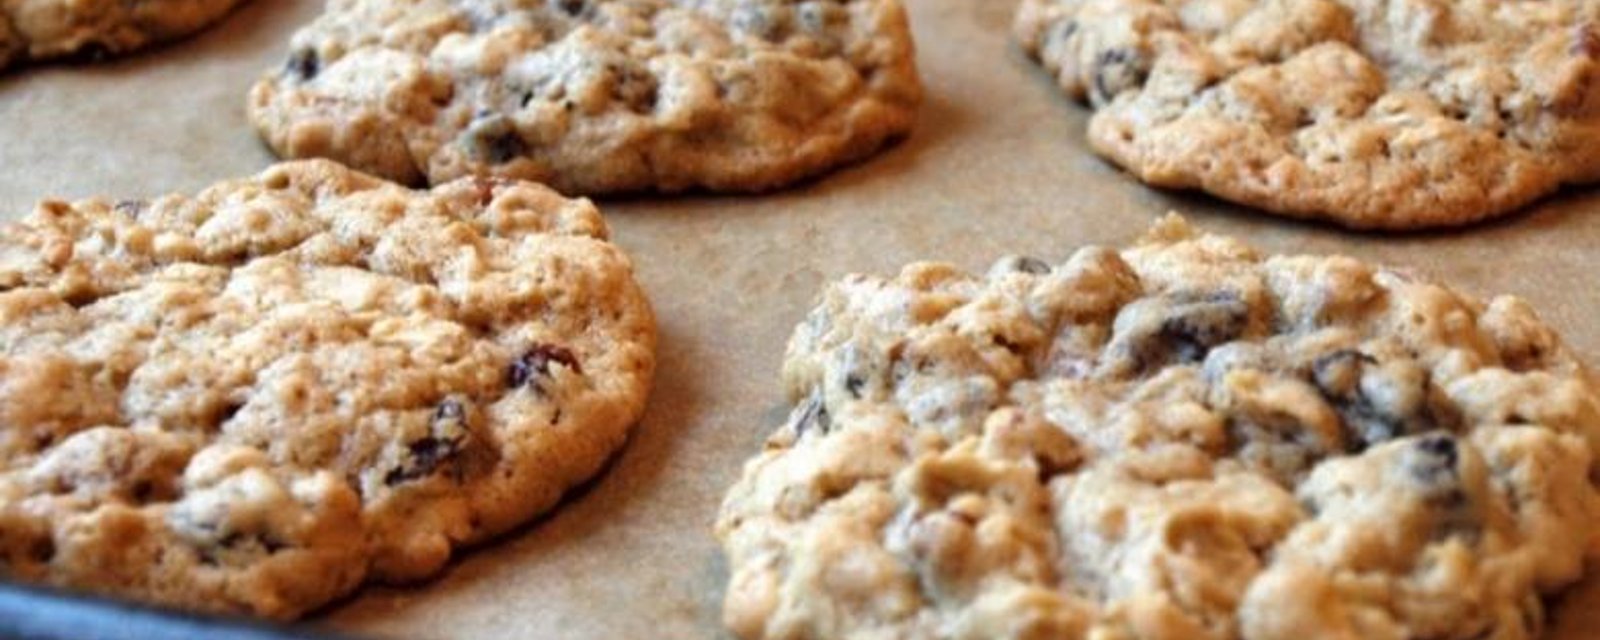 Vous aurez besoin de seulement 3 ingrédients pour réaliser ces délicieux biscuits